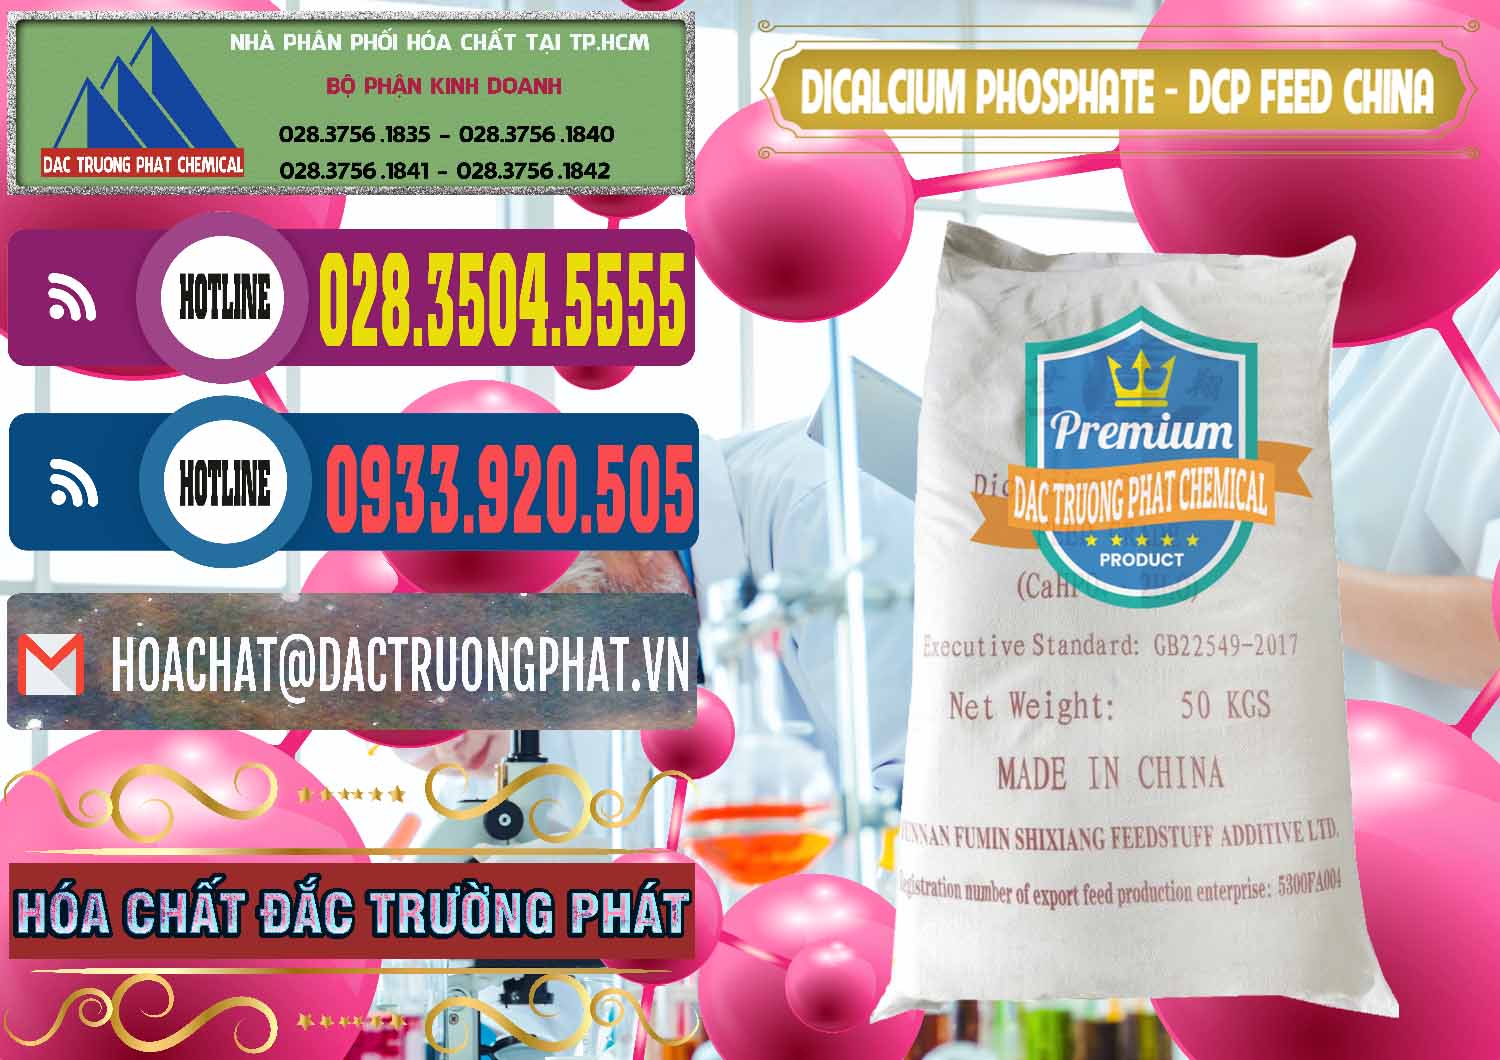 Đơn vị kinh doanh & bán Dicalcium Phosphate - DCP Feed Grade Trung Quốc China - 0296 - Cty phân phối _ cung ứng hóa chất tại TP.HCM - muabanhoachat.com.vn